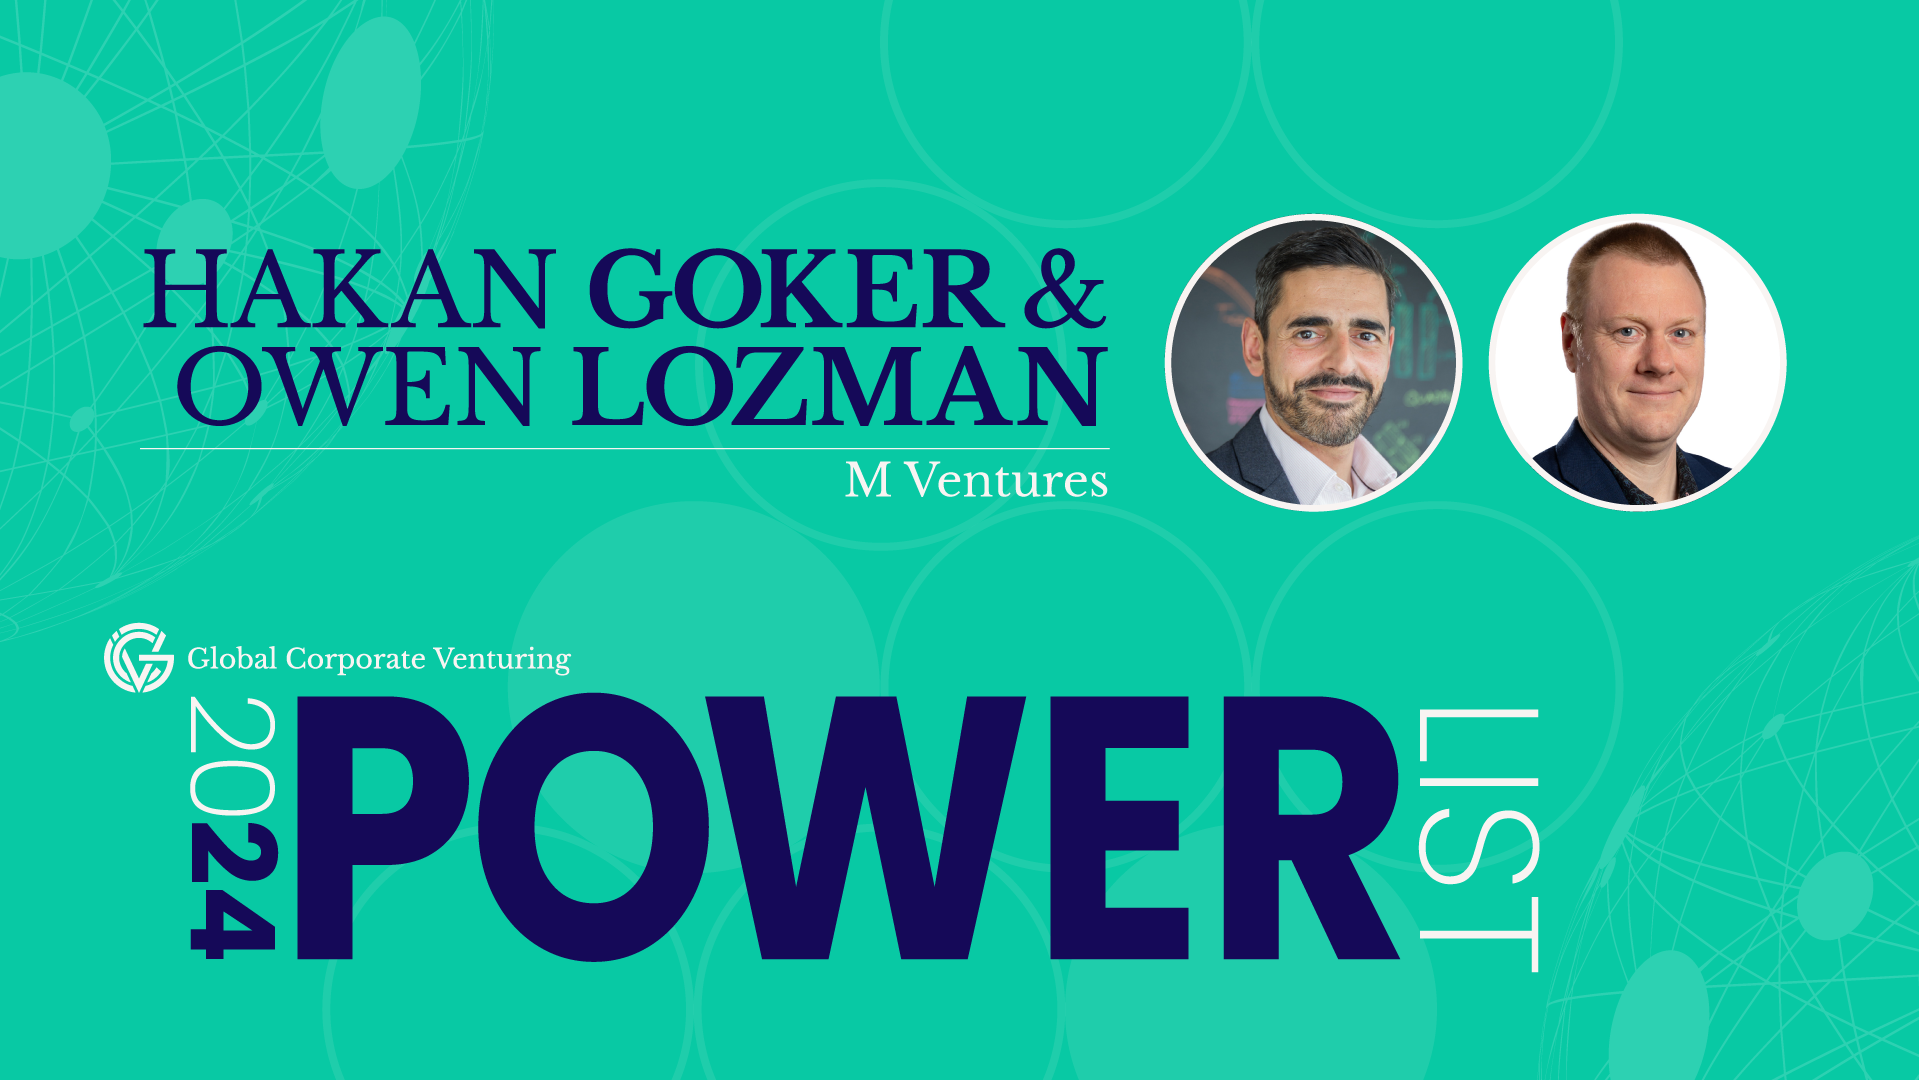 GCV Powerlist: Hakan Goker & Owen Lozman